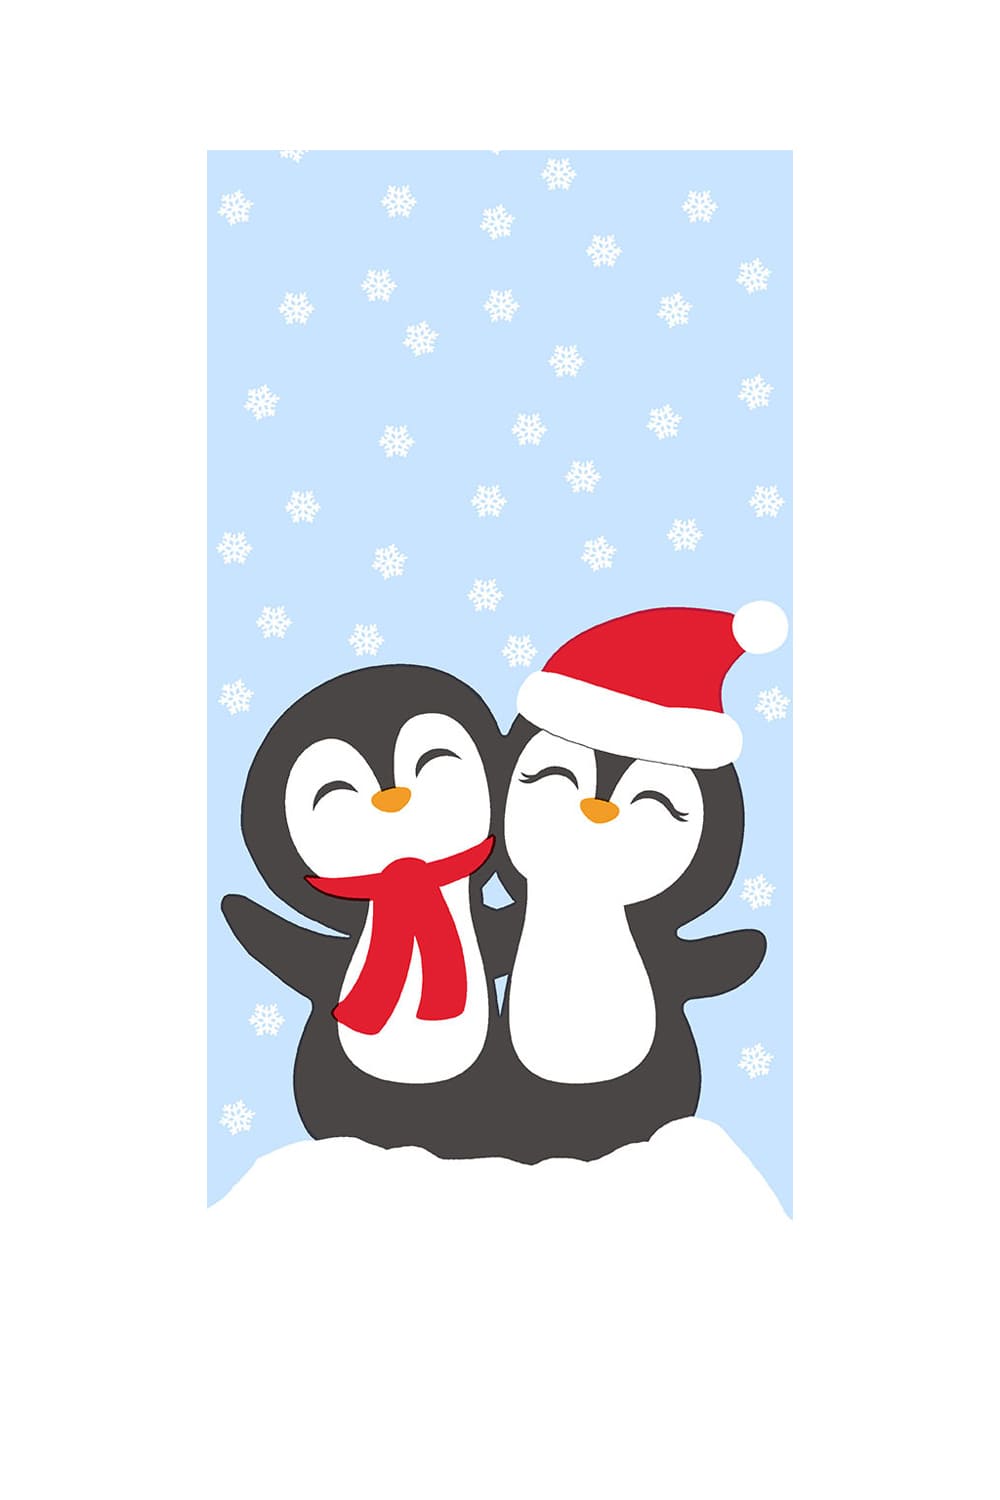 Diese witzigen Pinguine Taschentuecher sorgen bestimmt fuer viel Freude. Die beste Begleitung fuer Unterwegs, vor allem bei laufender Nase. Ein witziges Geschenk zu Weihnachten. Auch perfekt fuer das Befuellen eines Adventskalenders. Diese Pinguine Nastuecher kann man auch in ein Geldgeschenk verwandeln.